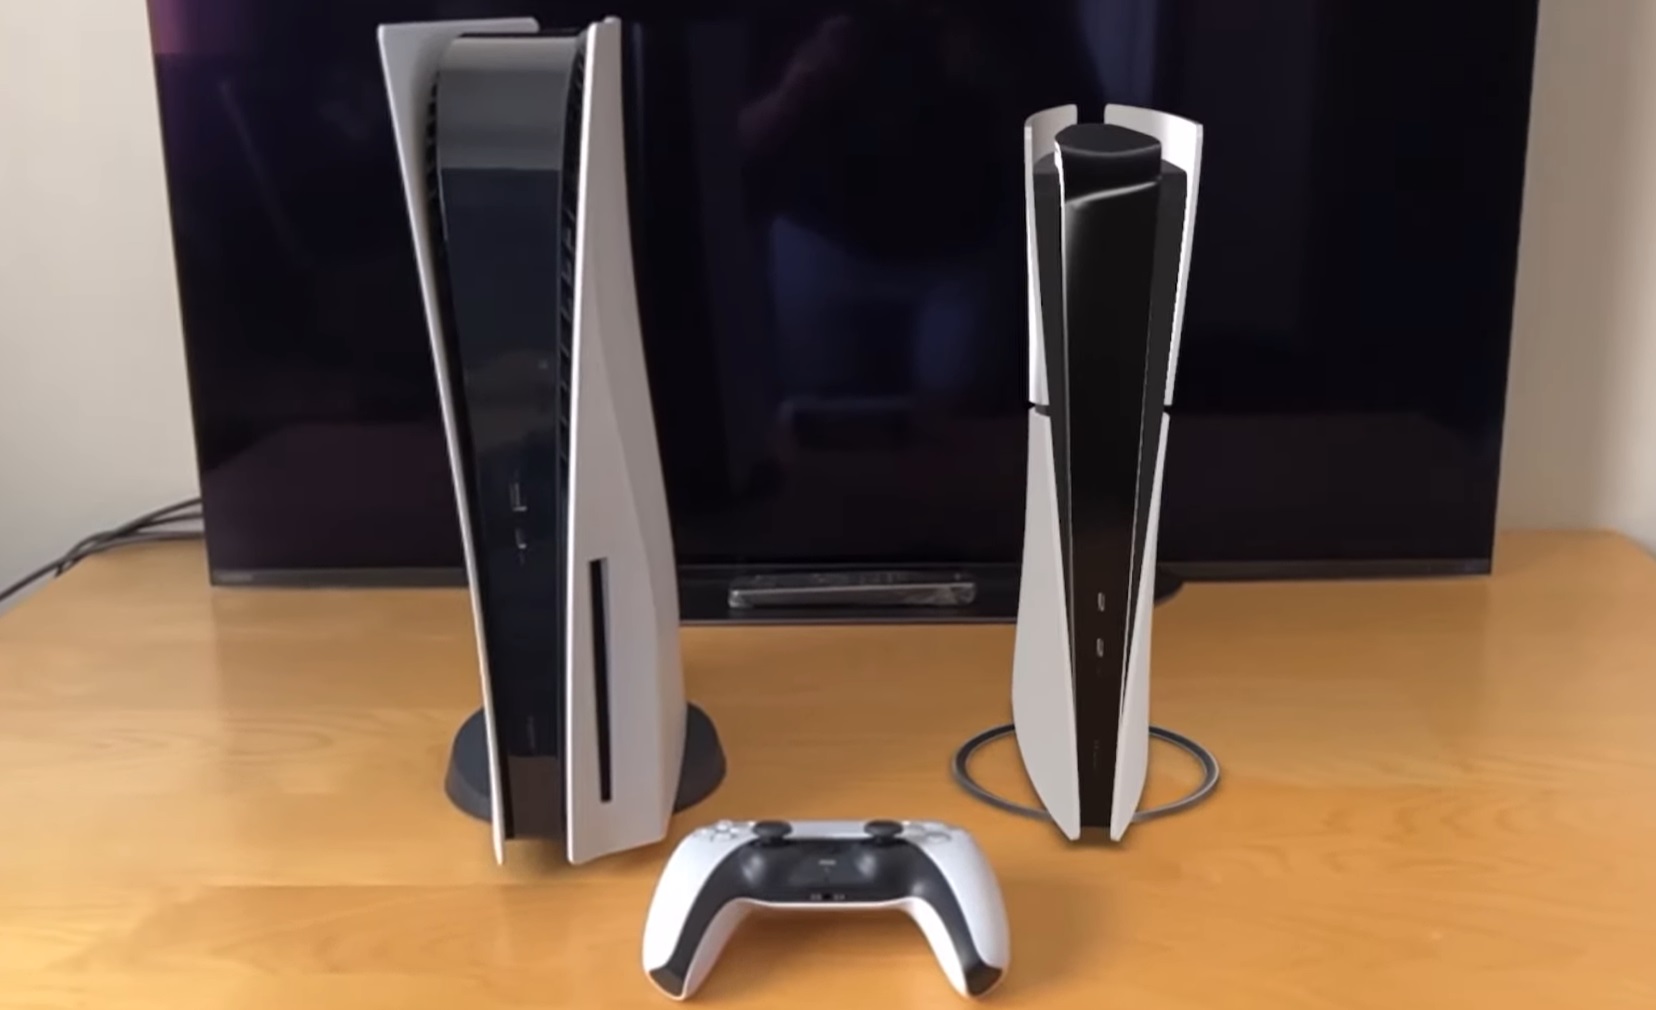 Sony anuncia la PS5 Slim: fecha de lanzamiento y características